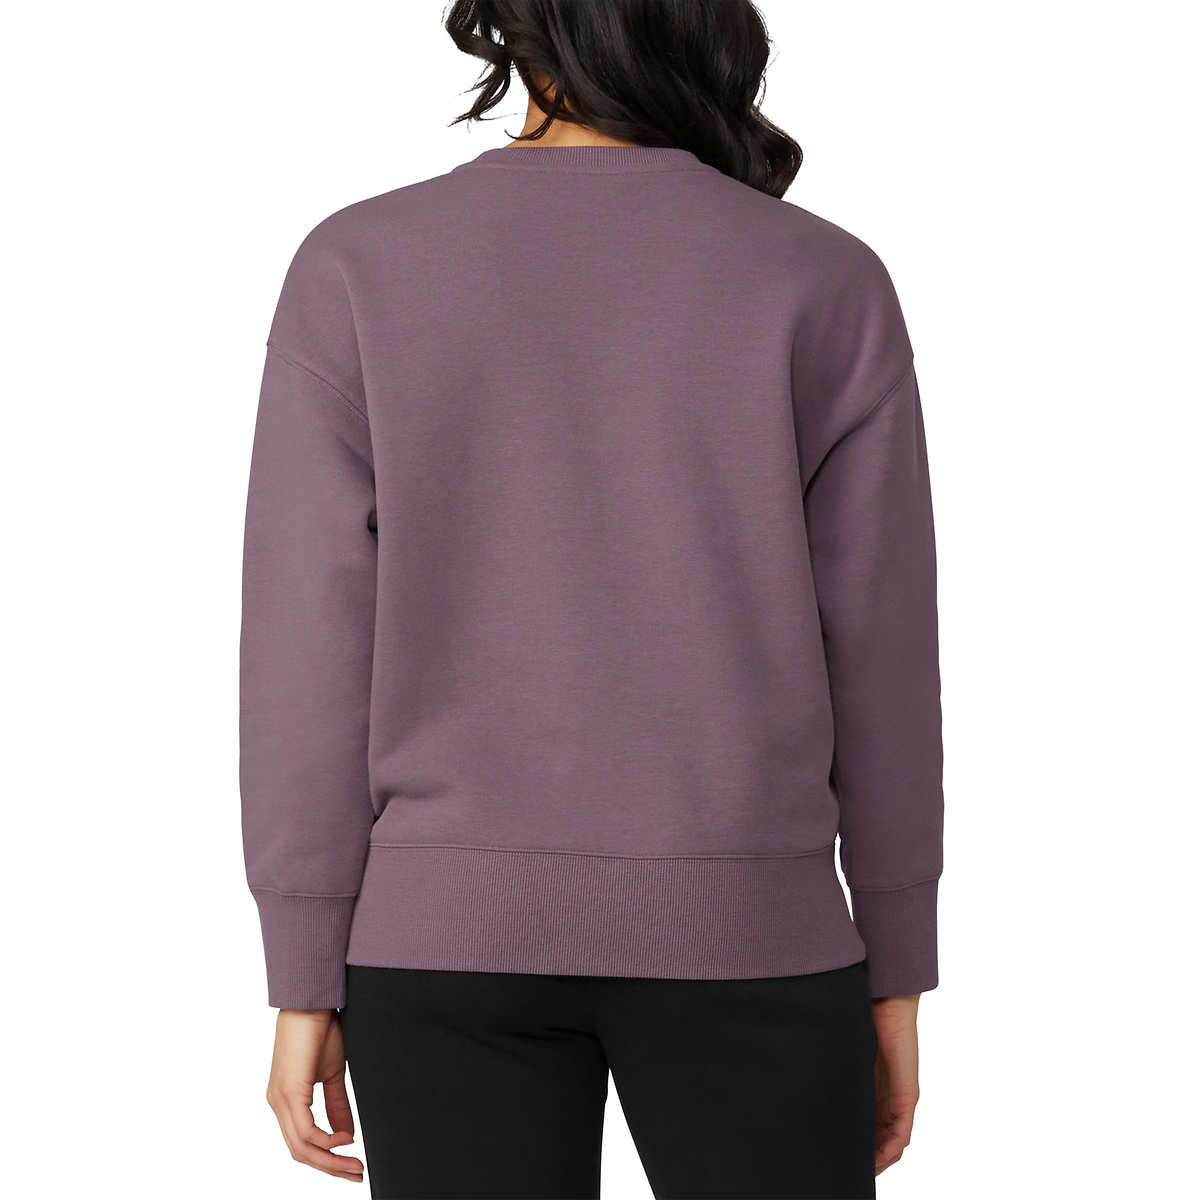 FILA Women's Chest Logo Cotton Blend Active Crewneck Sweatshirt Top